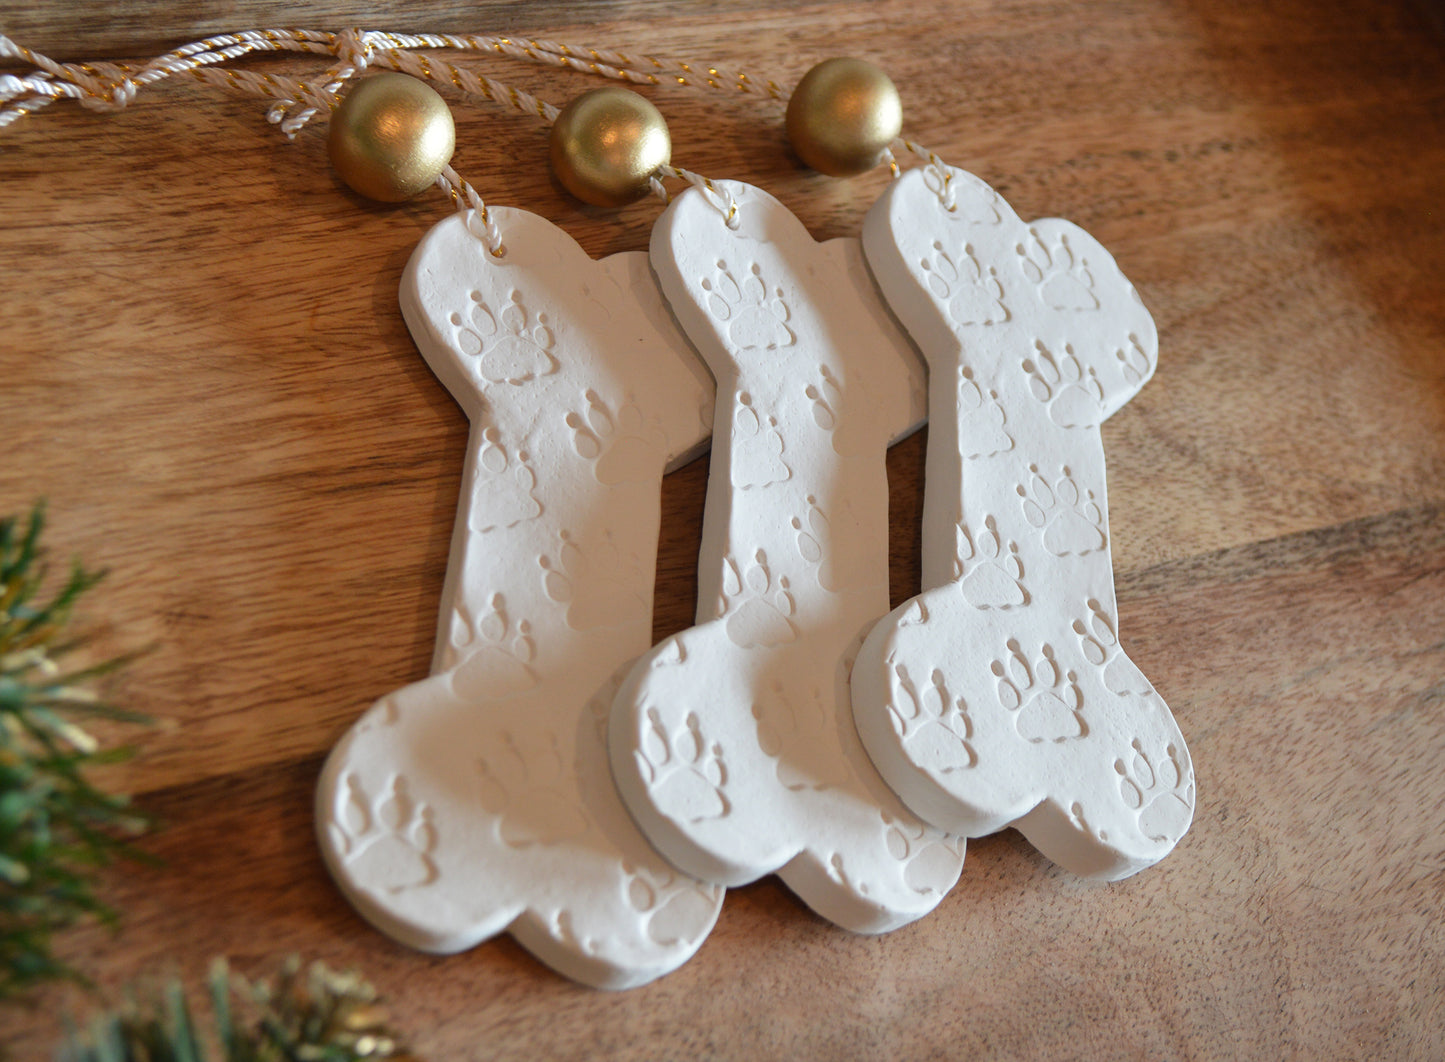 3 dog bone shapes ornaments